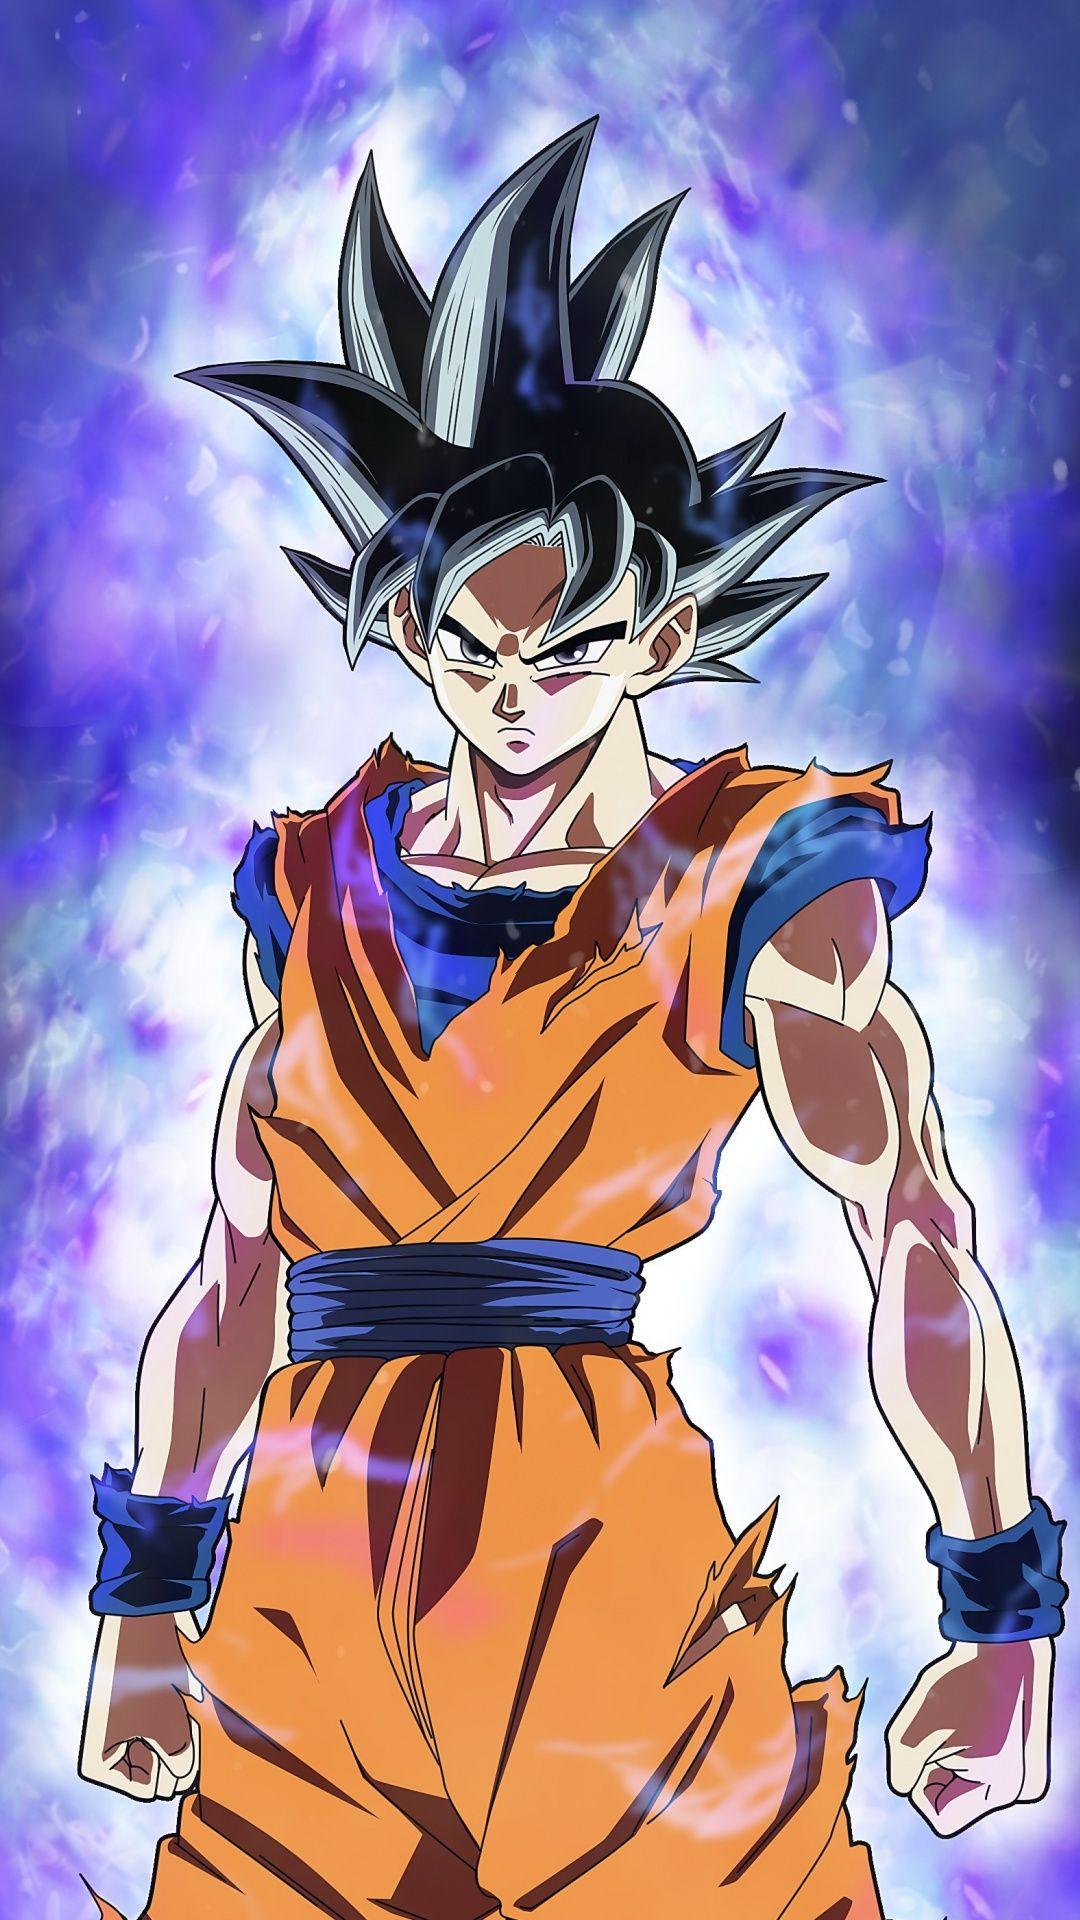 Anime, Dargon Ball Super, Goku, art, 1080x1920 wallpaper